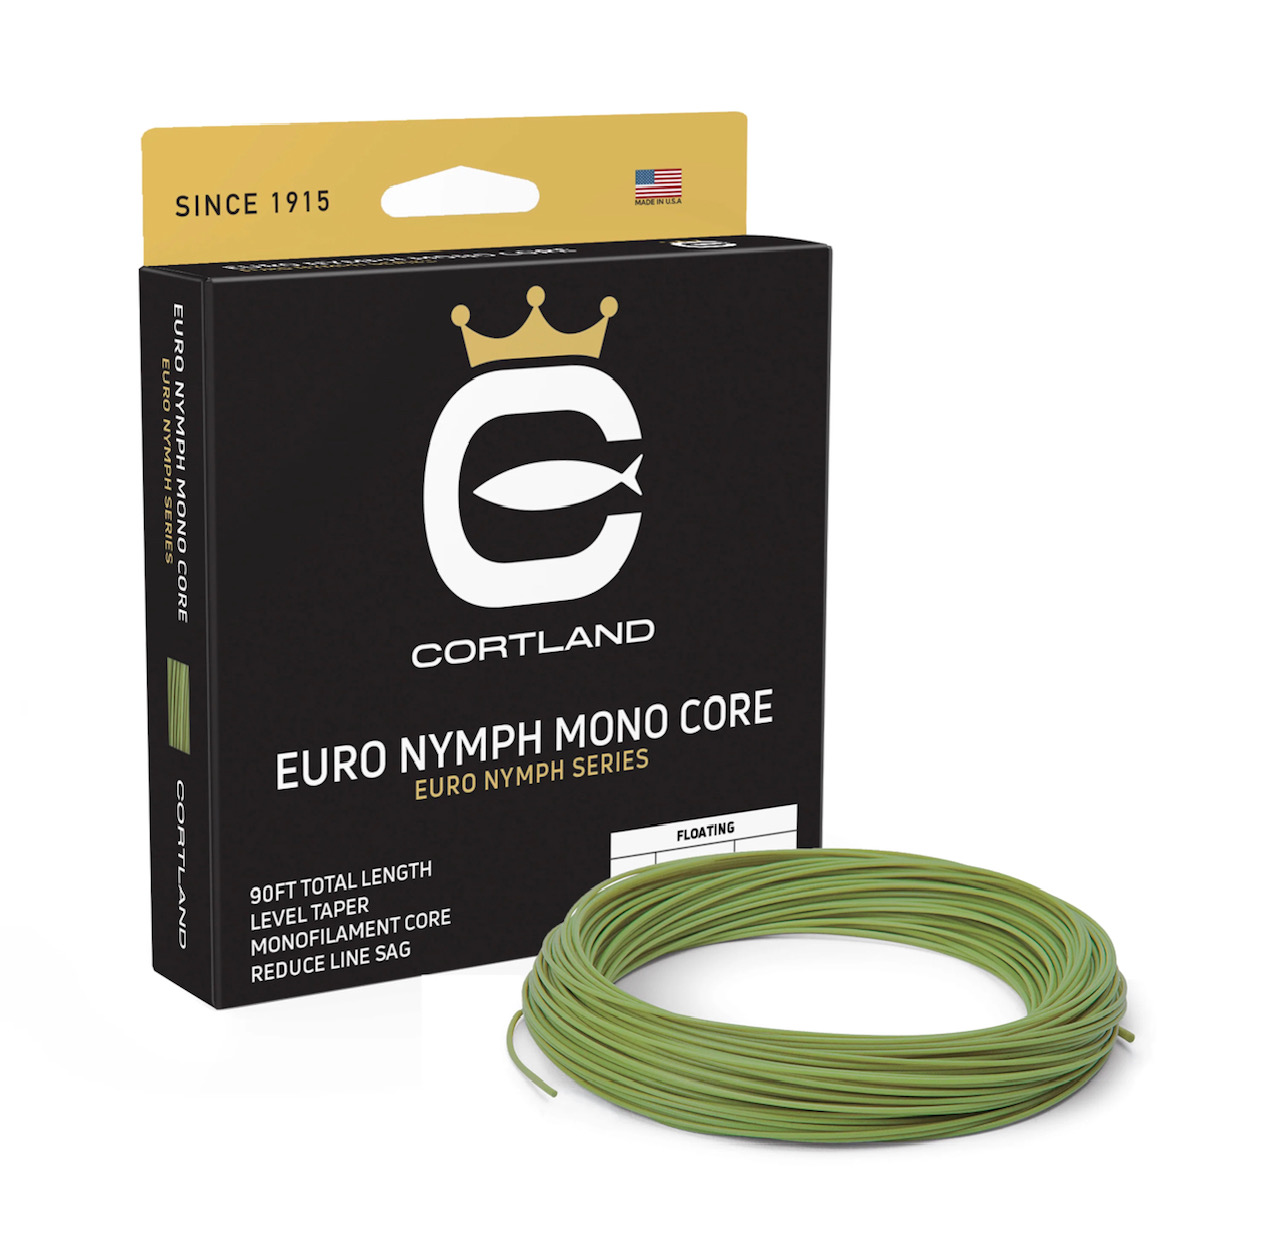 Euro Nymph Mono Core